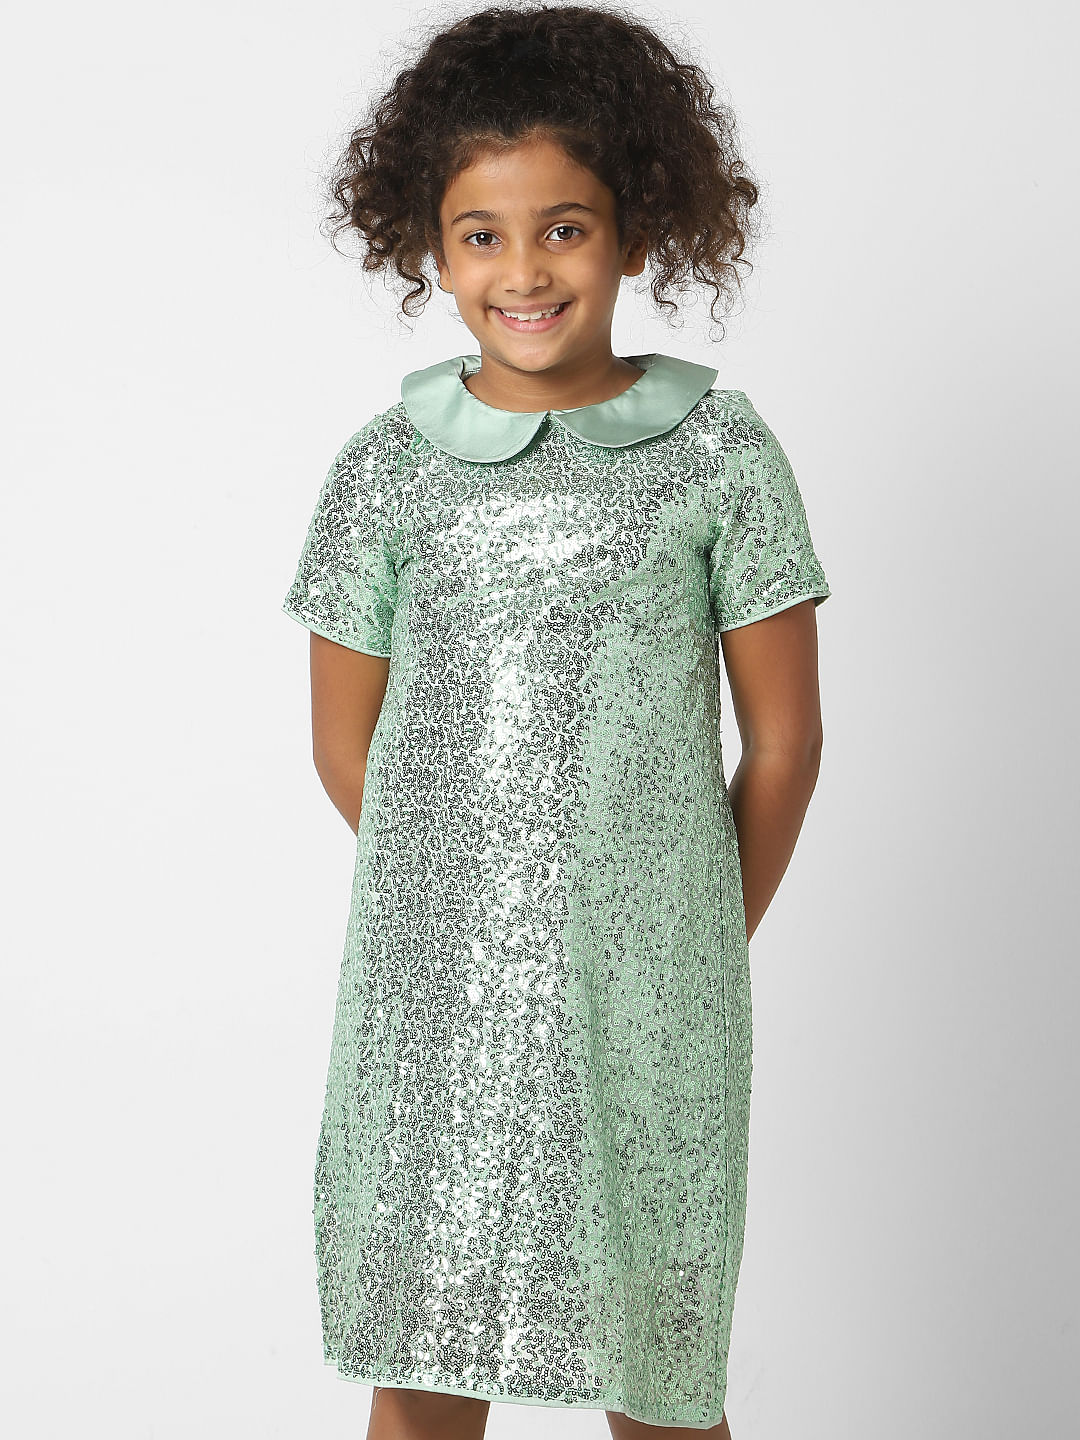 Buy Green Lycra Dress for Girls Online